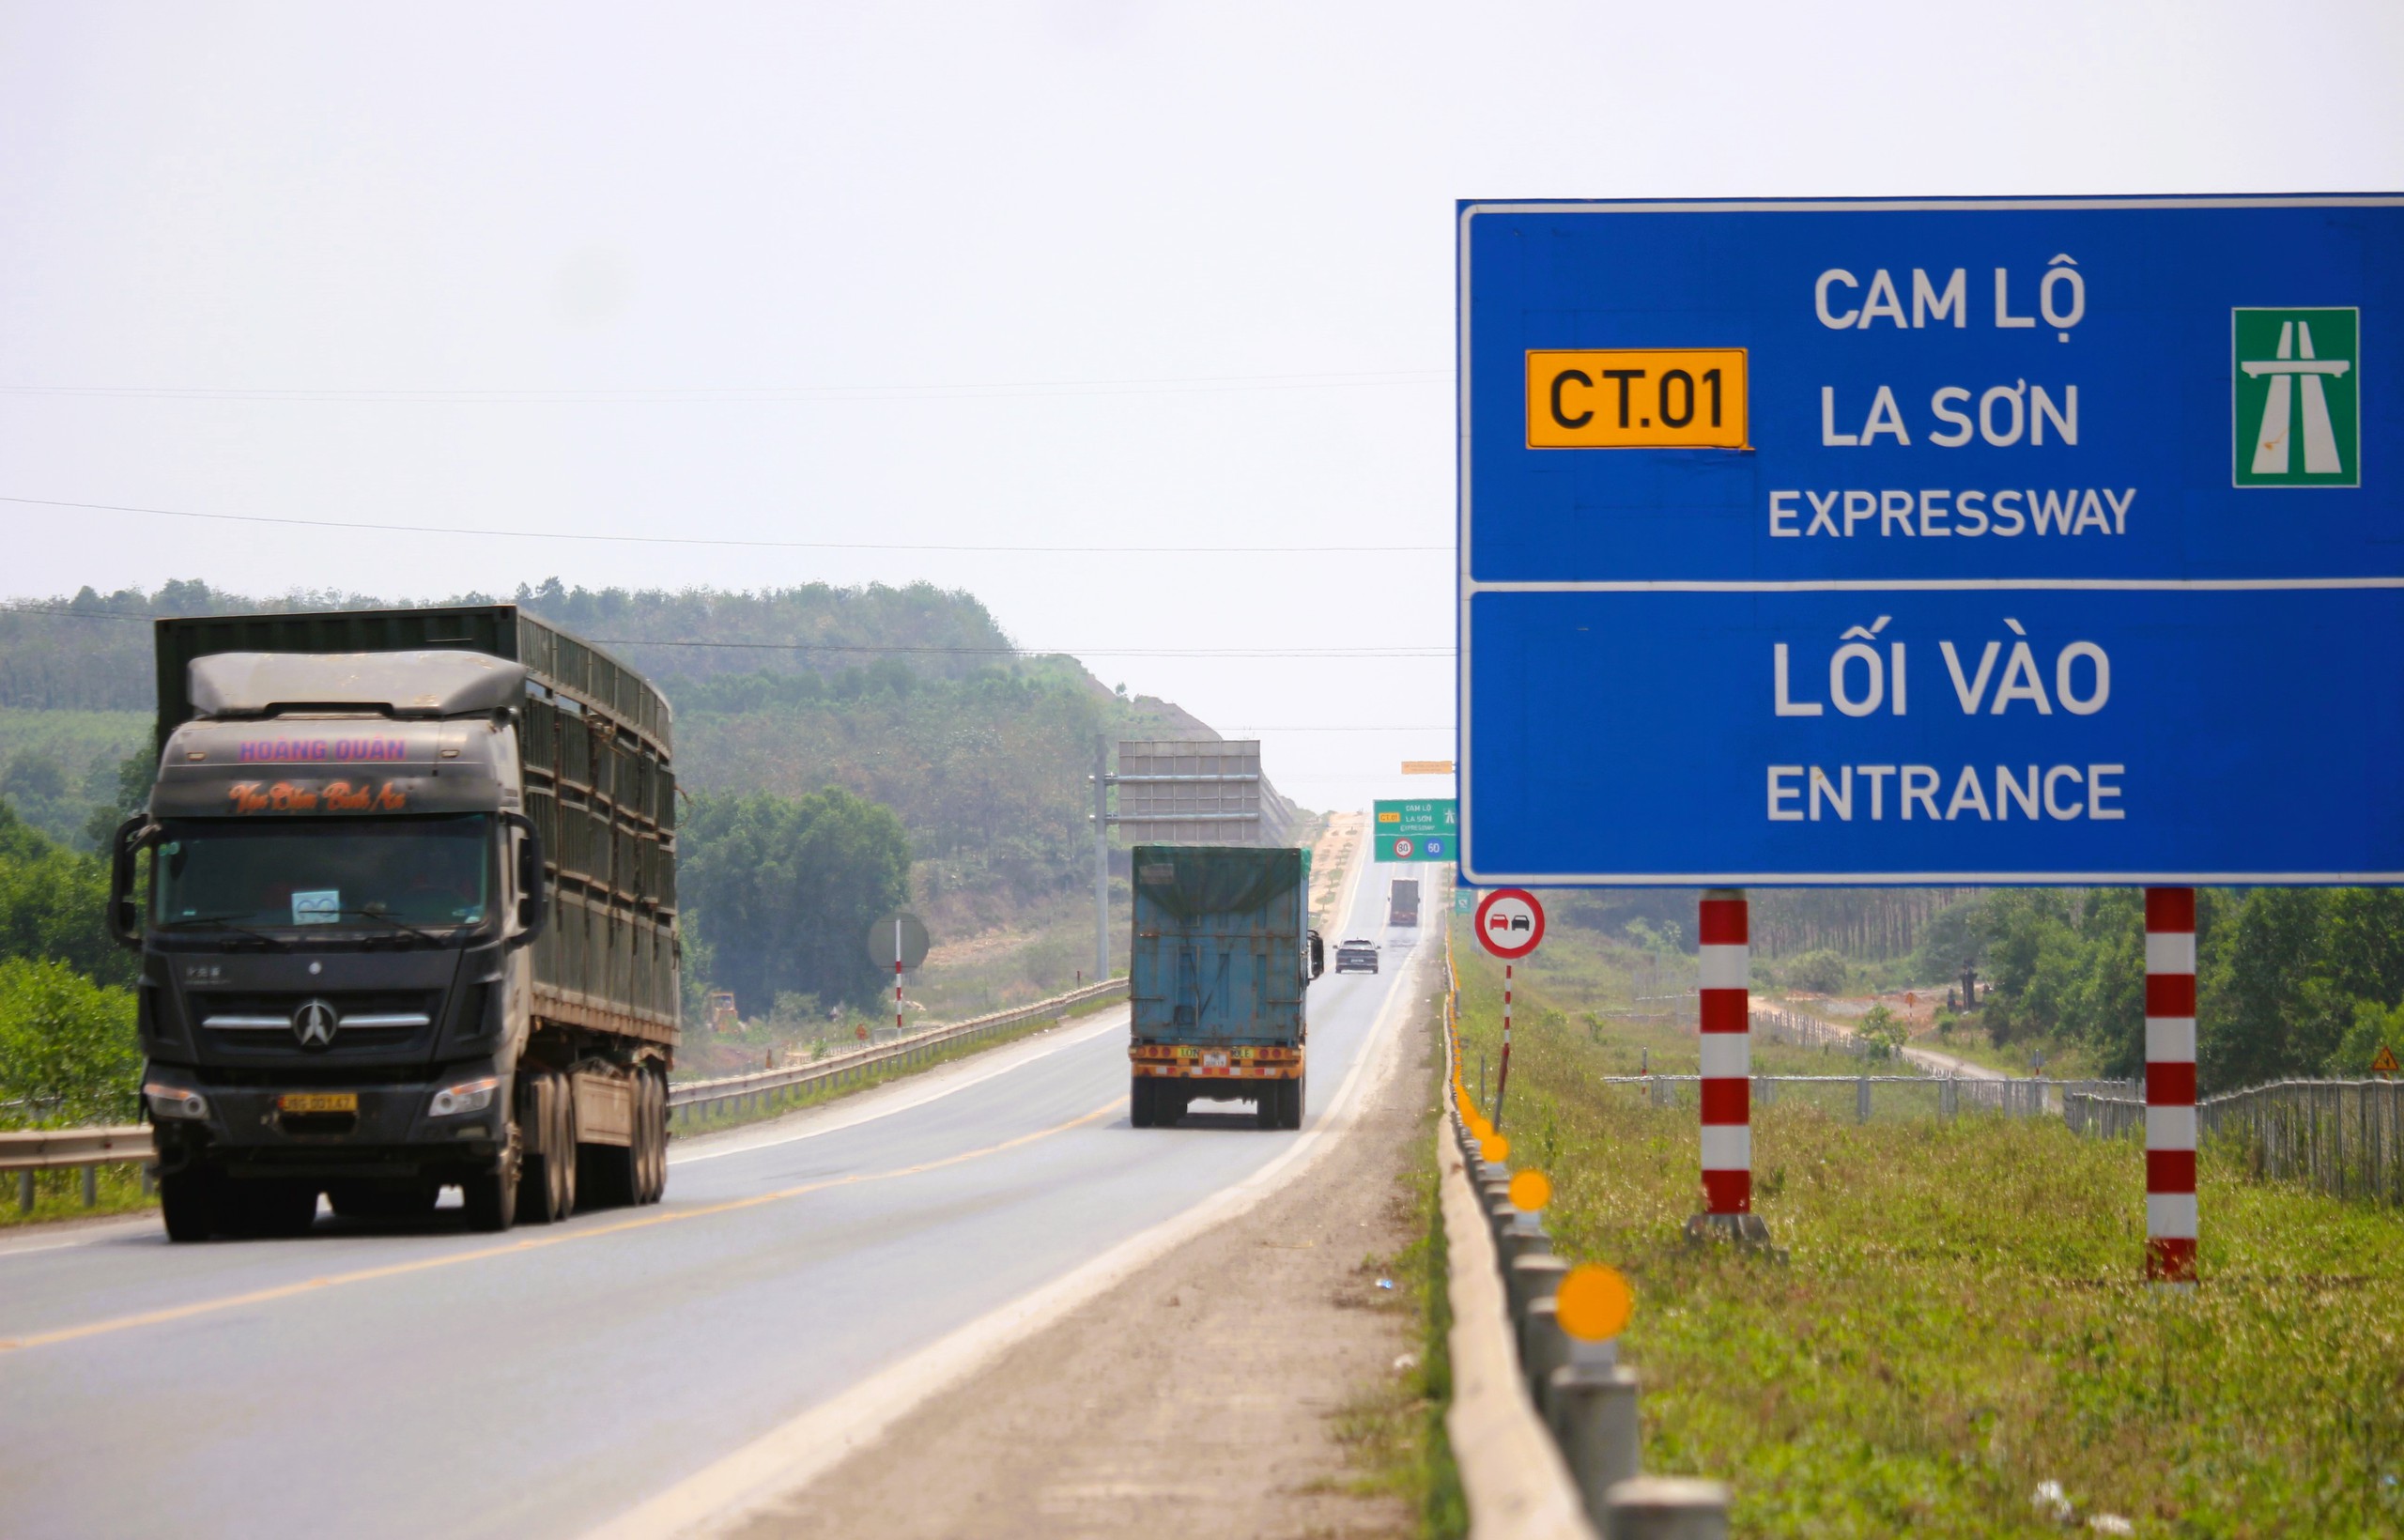 Hơn 7.000 đinh phản quang được bổ sung trên cao tốc Cam Lộ - La Sơn- Ảnh 3.